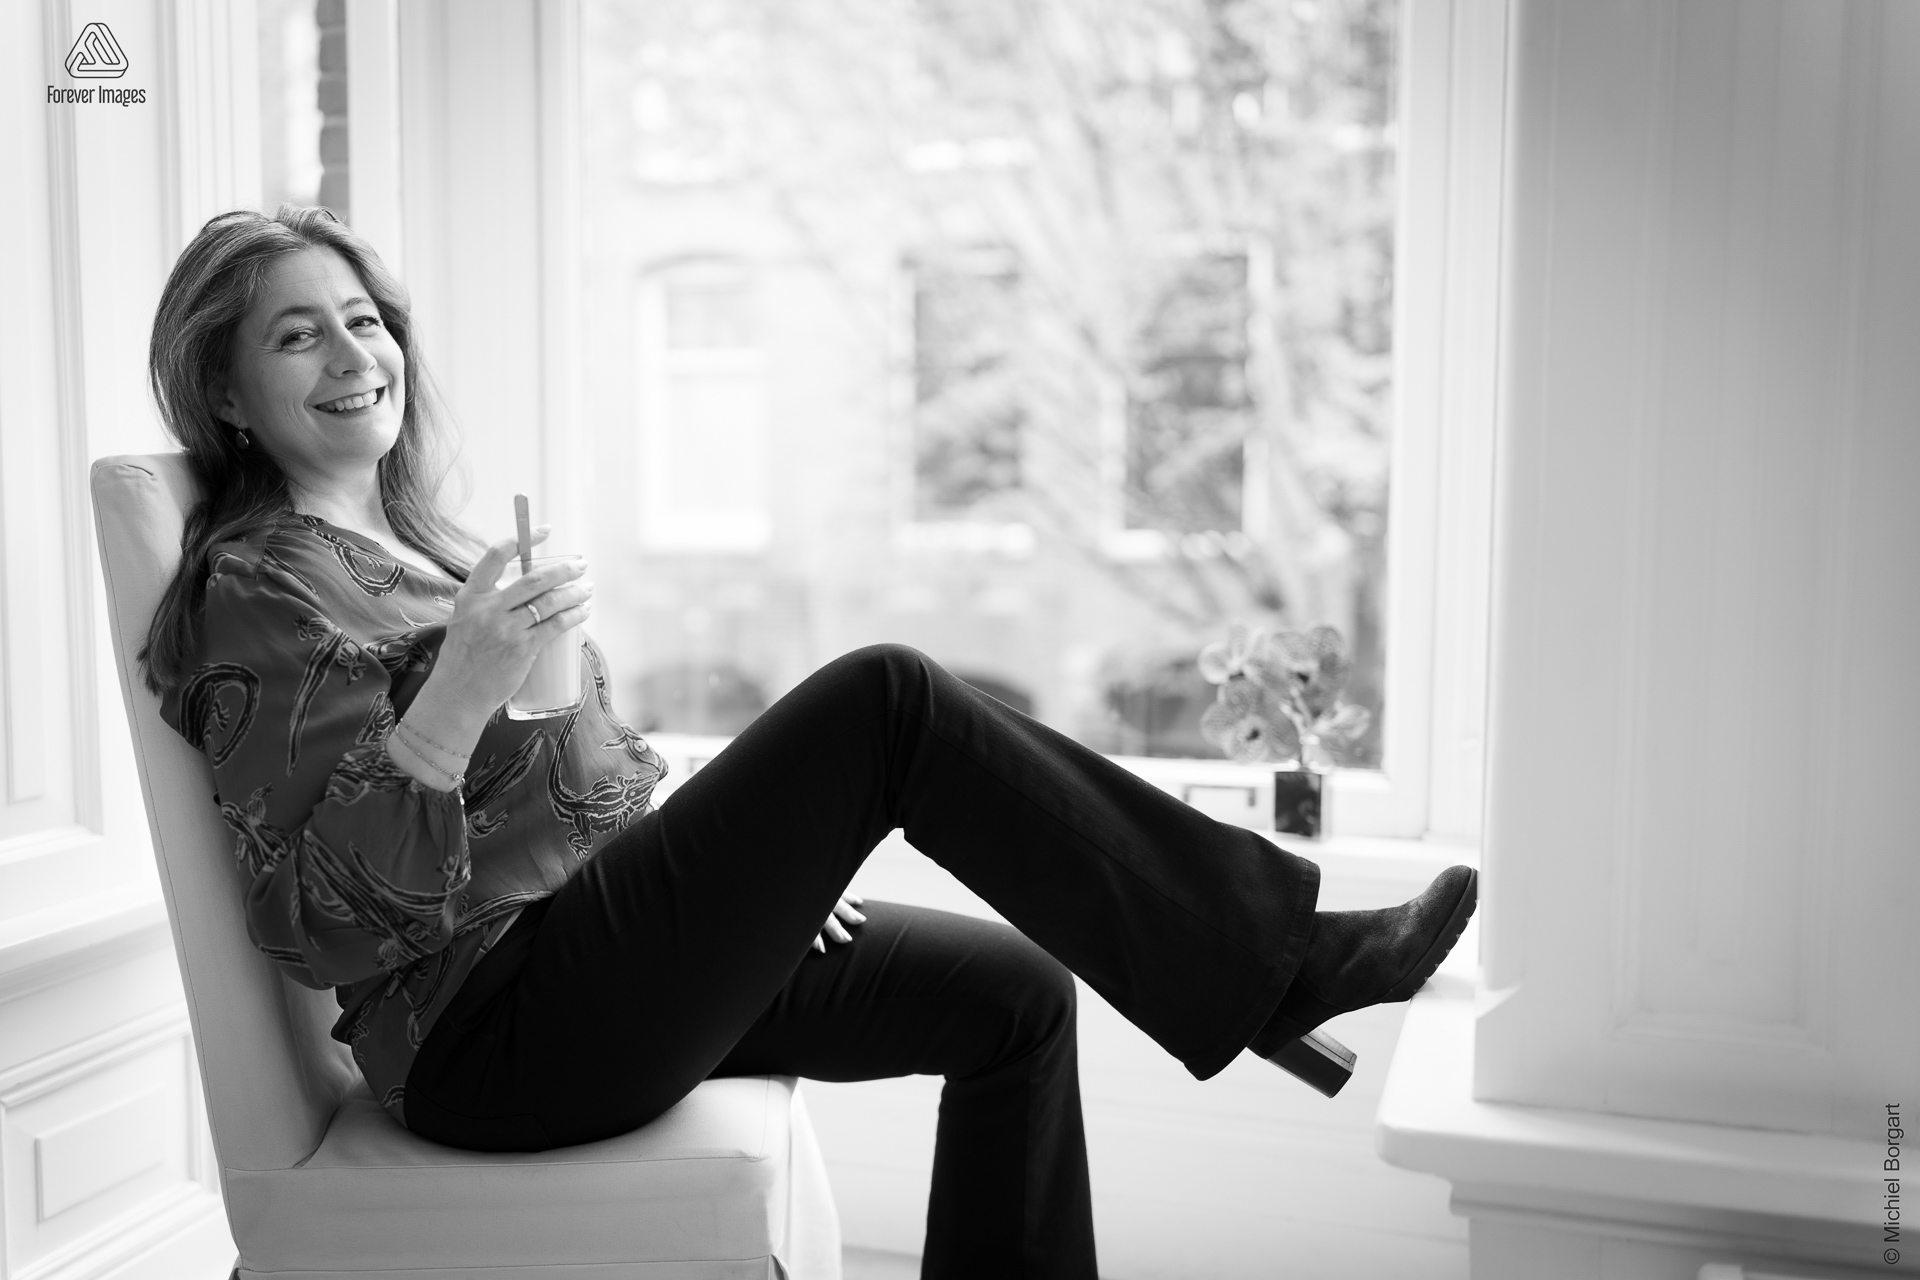 Portretfoto zwart-wit dame zit met koffie bij het raam | Mirjam Bach Kleurkeuze | Portretfotograaf Michiel Borgart - Forever Images.